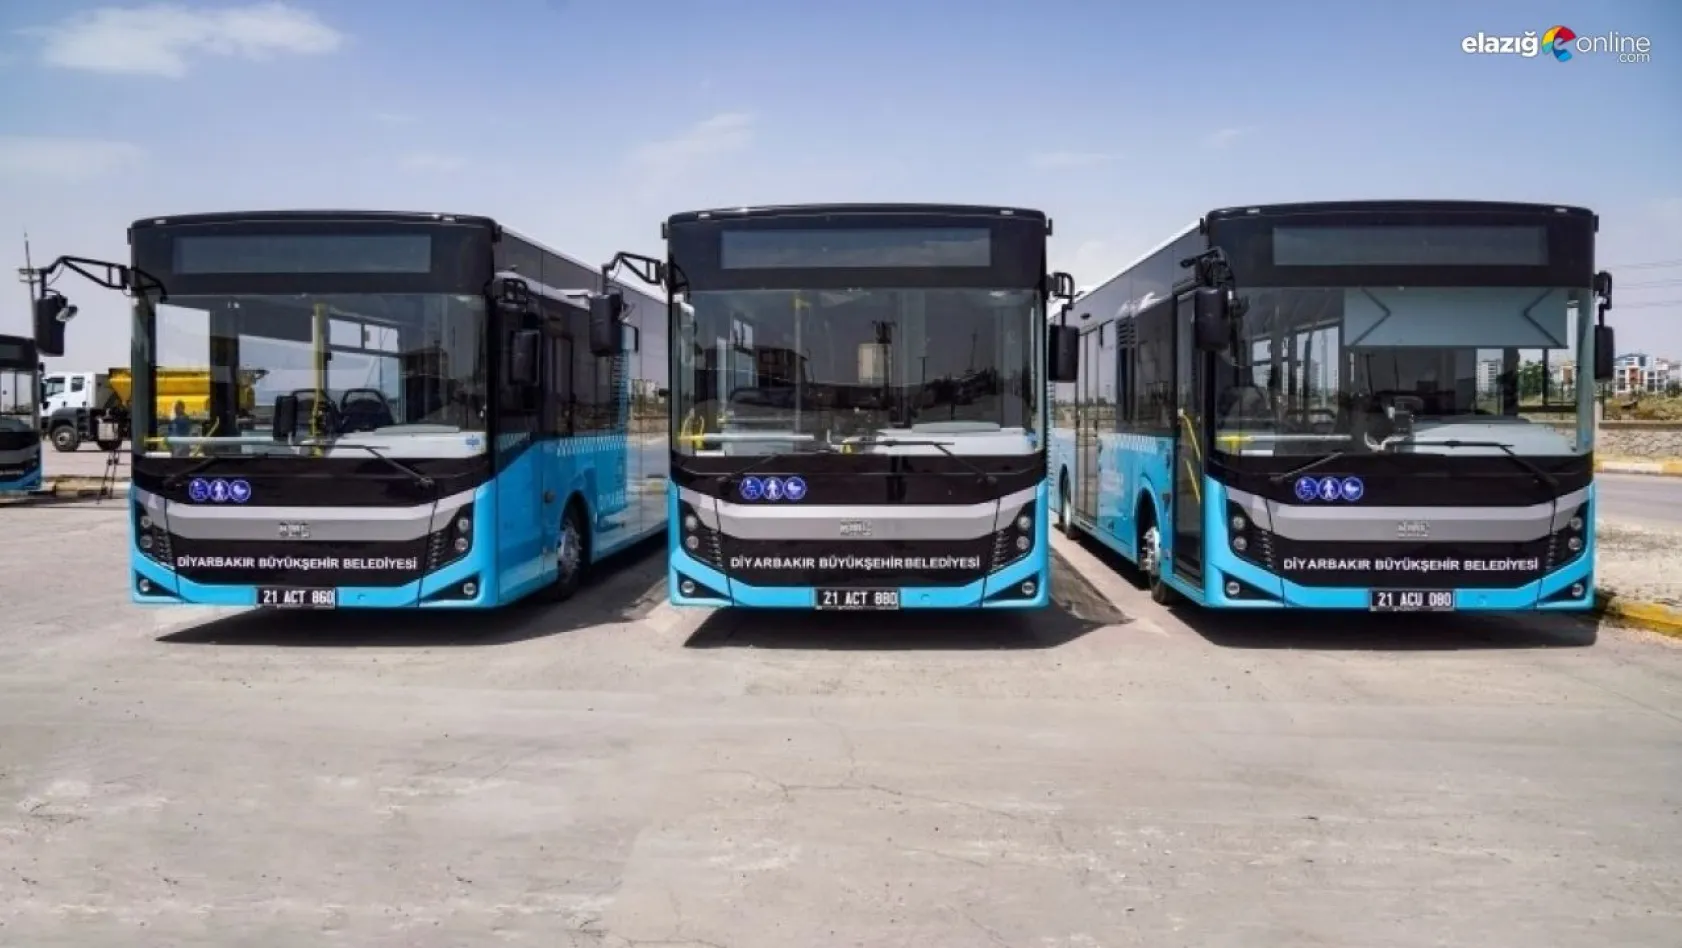 Karabaş Mahallesi otobüs güzergahı Kabasakal Mahallesine uzatıldı